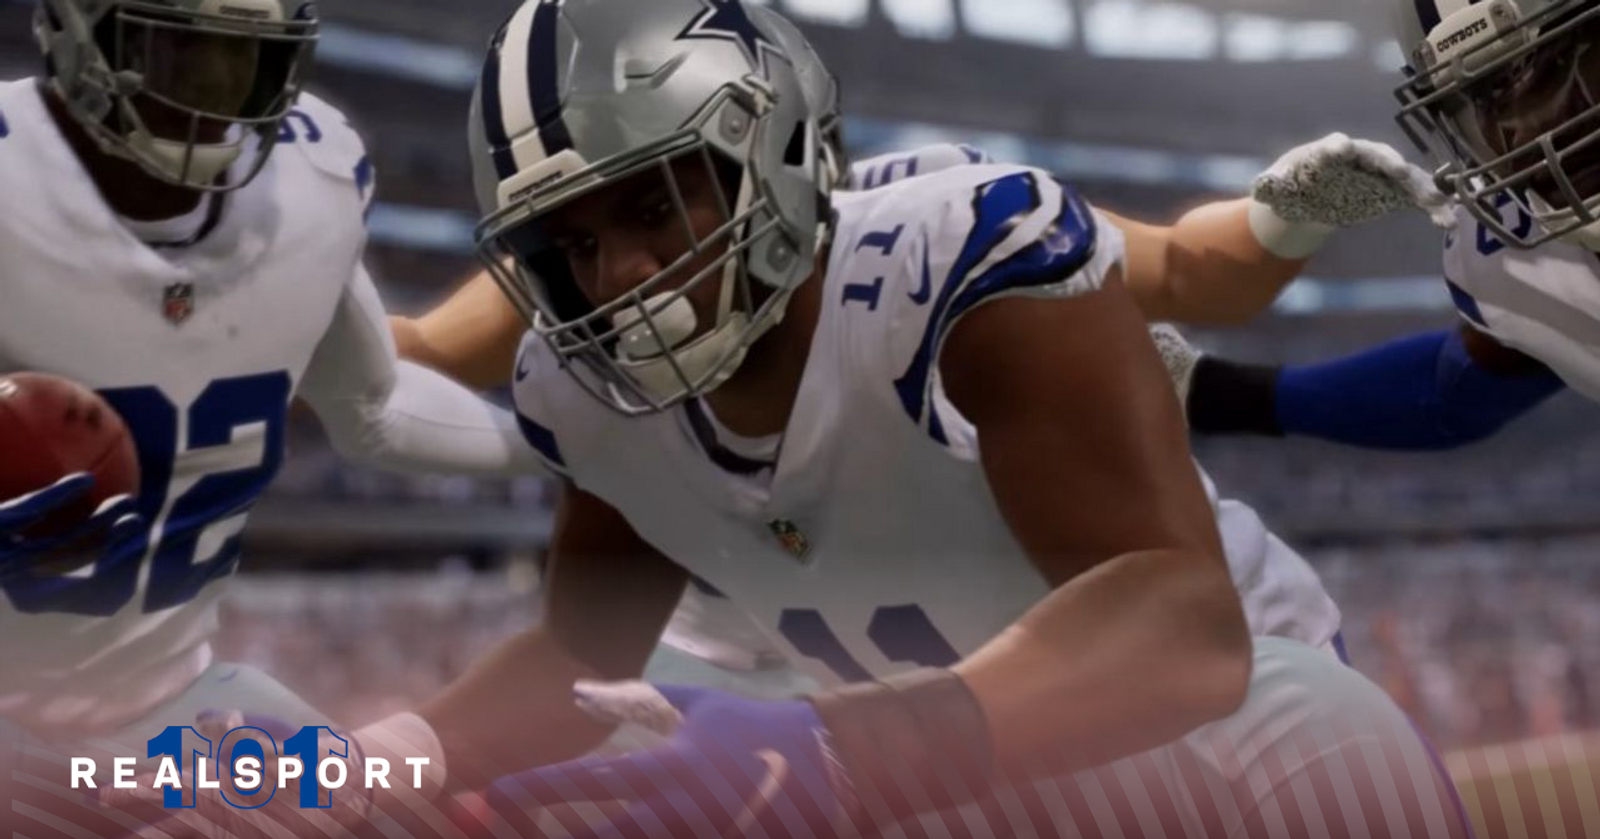 Madden NFL 23 Gameplay Trailer - Full Details on FieldSENSE